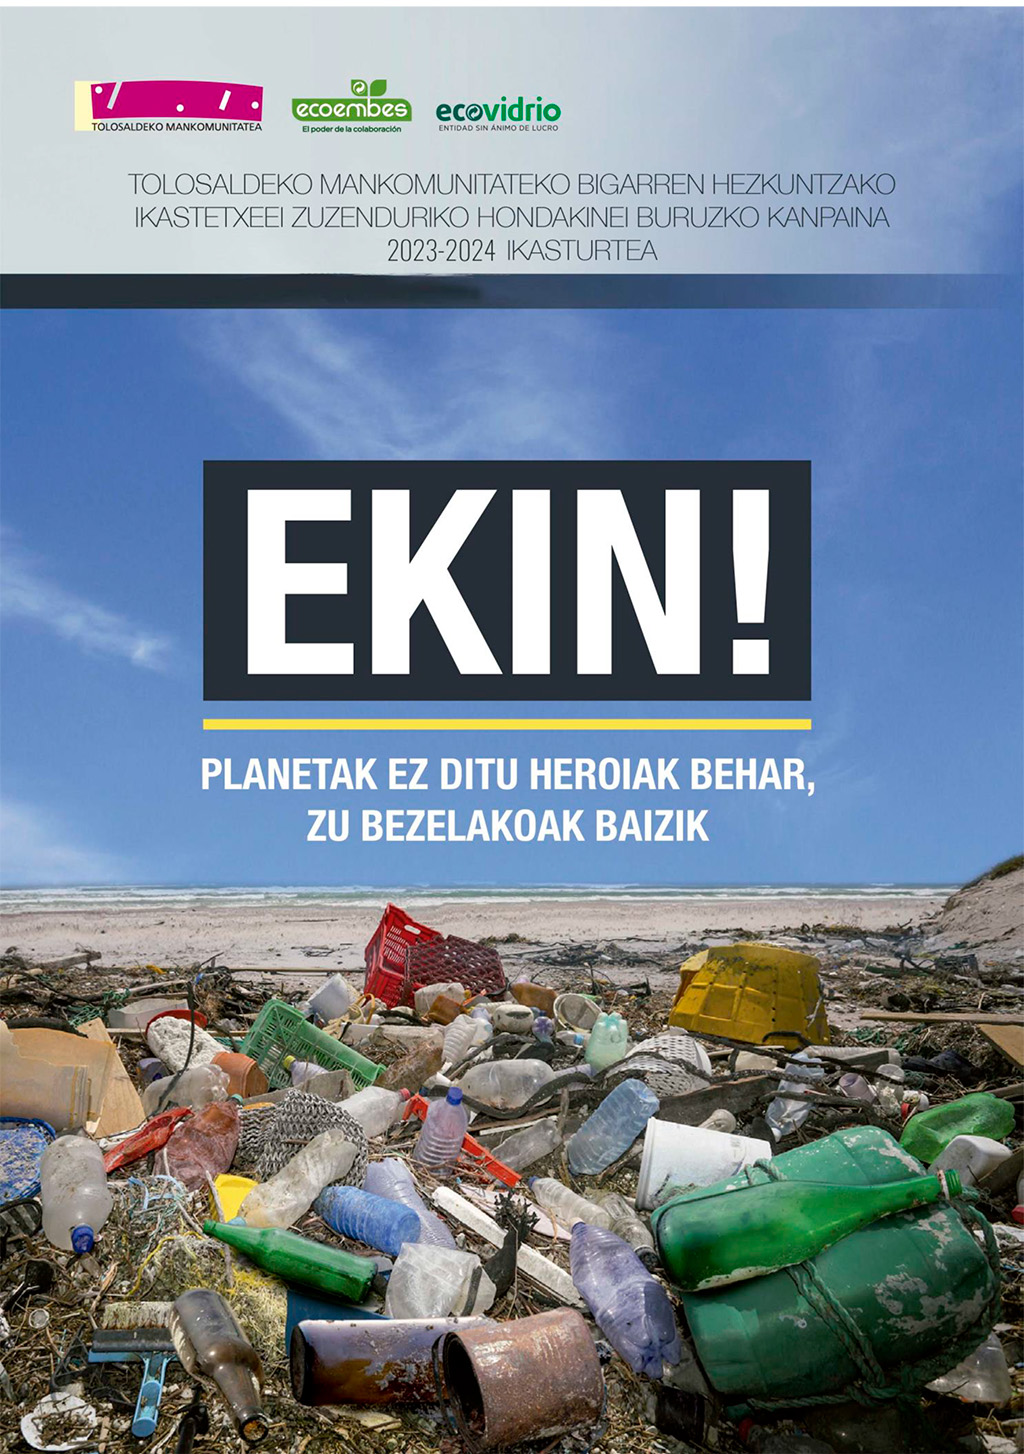 Comienza la 5ª edición de la campaña EKIN!